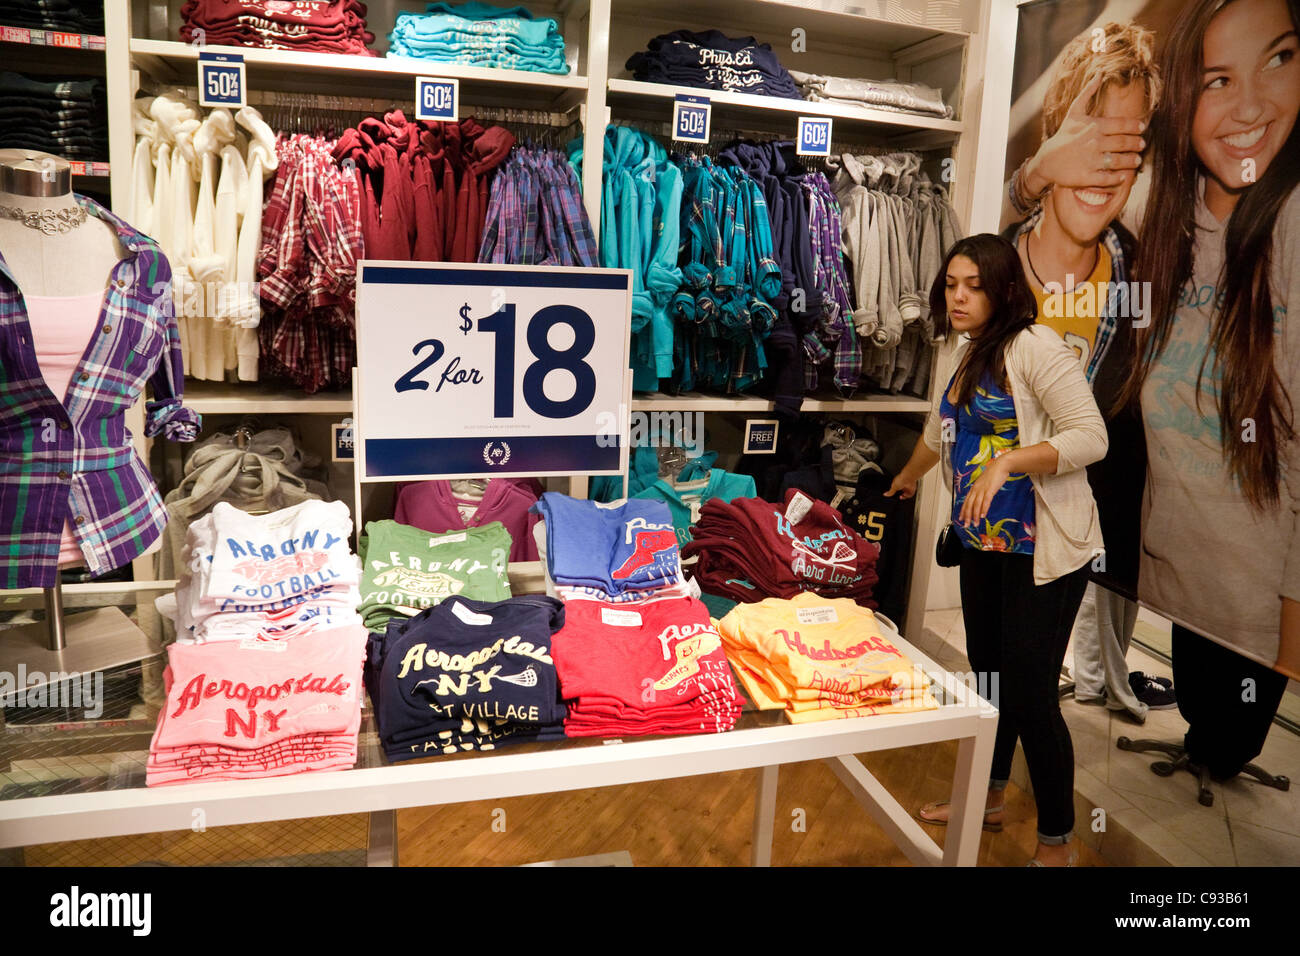 Una ragazza adolescente shopping per i vestiti, Aeropostale negozio di abbigliamento interno, Montgomery shopping mall, Washington DC, Stati Uniti d'America Foto Stock